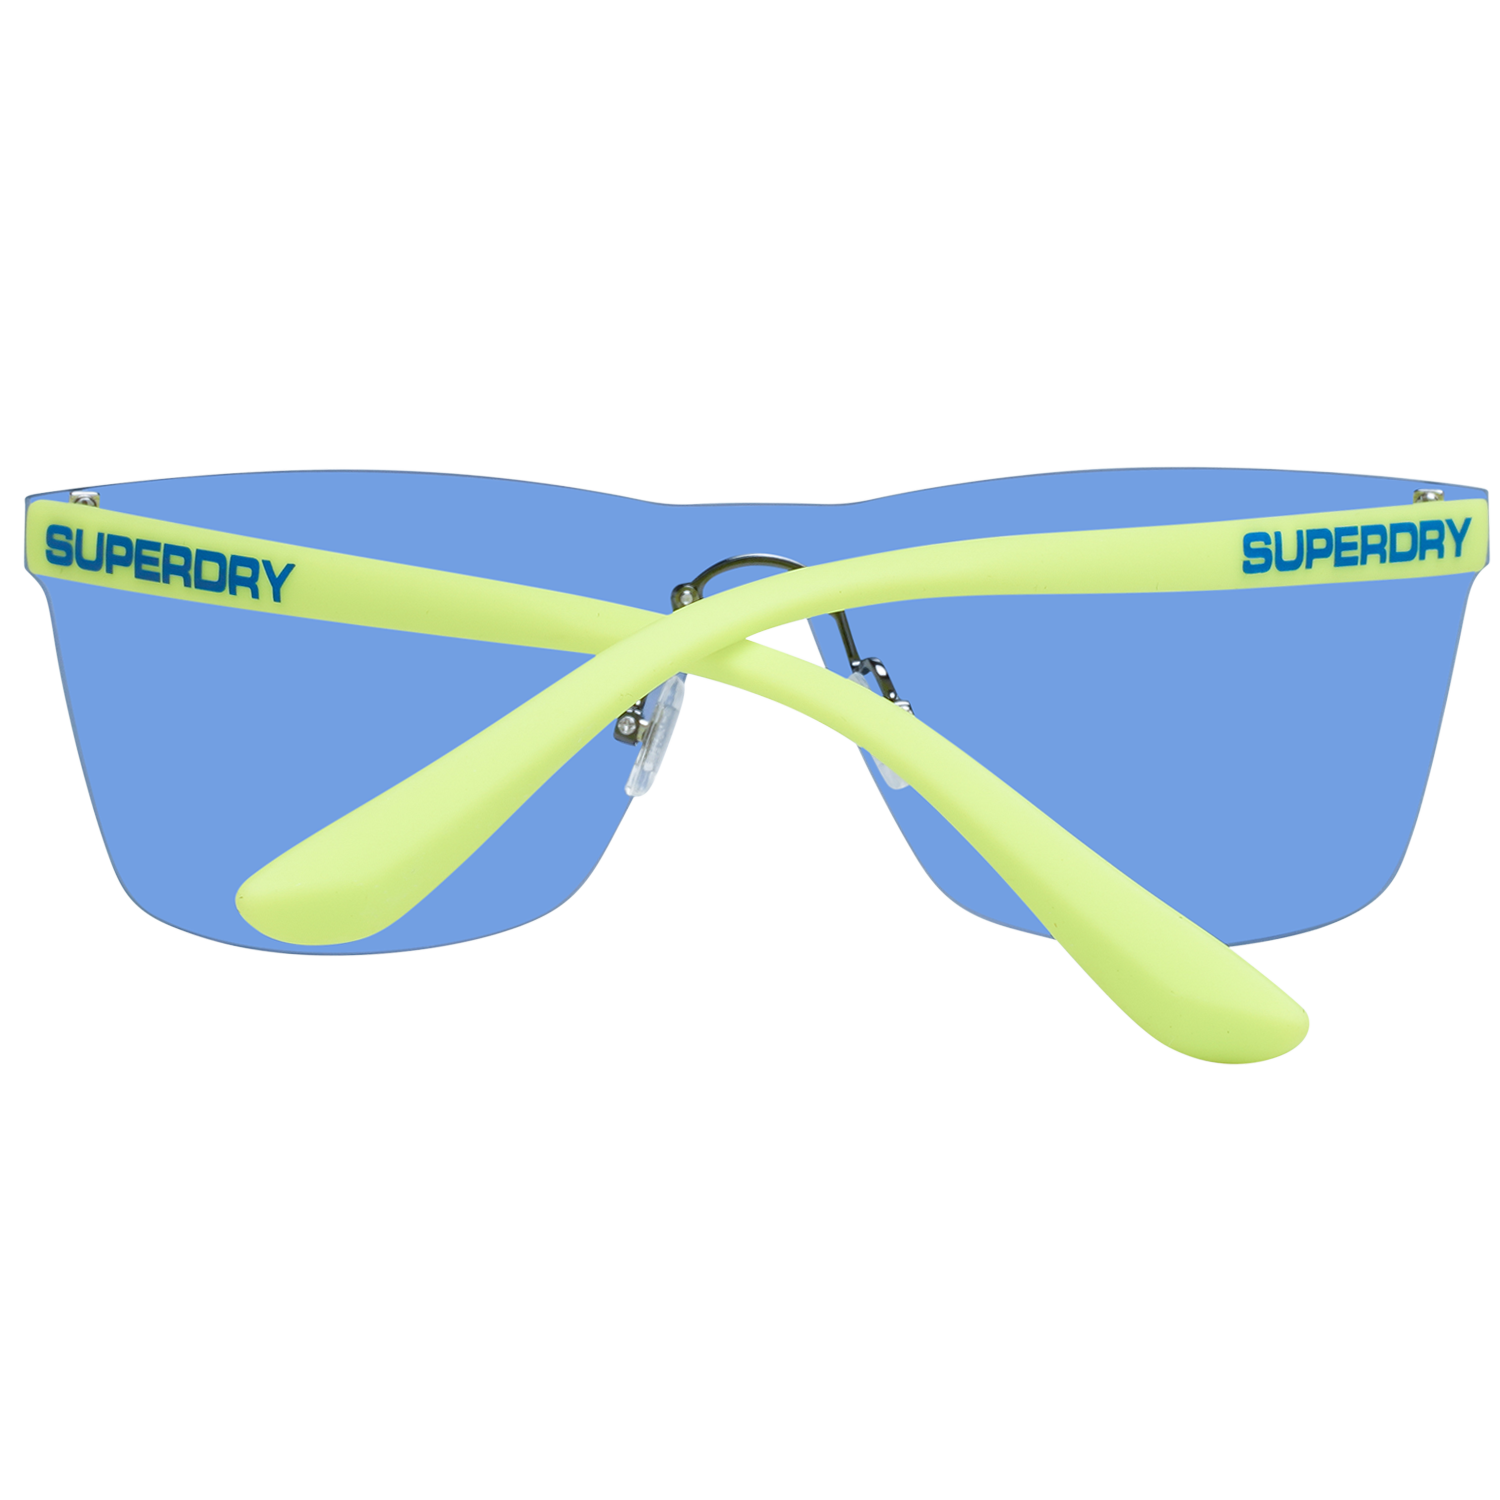 Superdry Sunglasses Superdry Sunglasses SDS Electroshock 105 13 Eyeglasses Eyewear UK USA Australia 